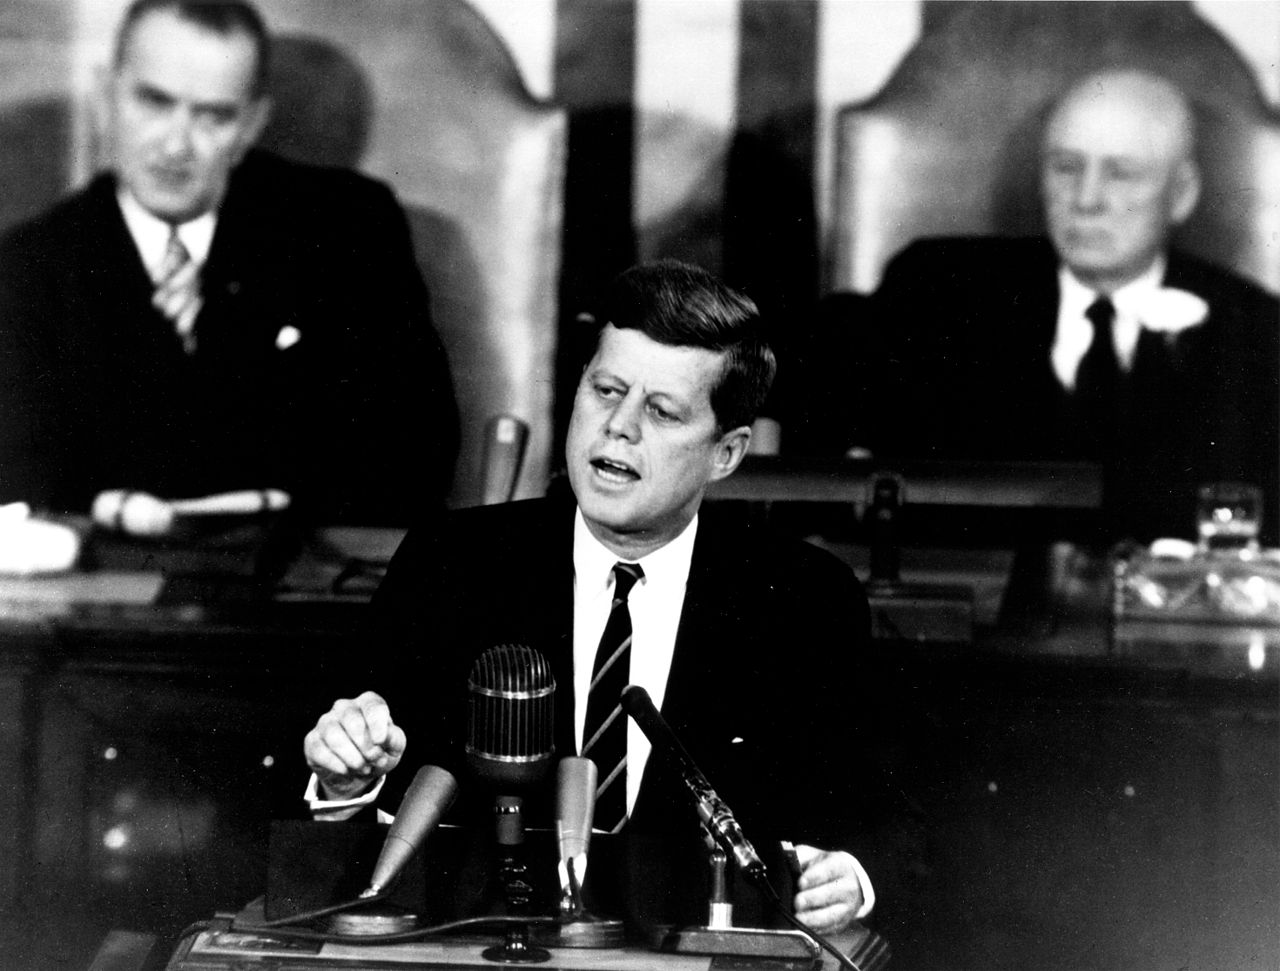 Kennedy giving speech to Congress